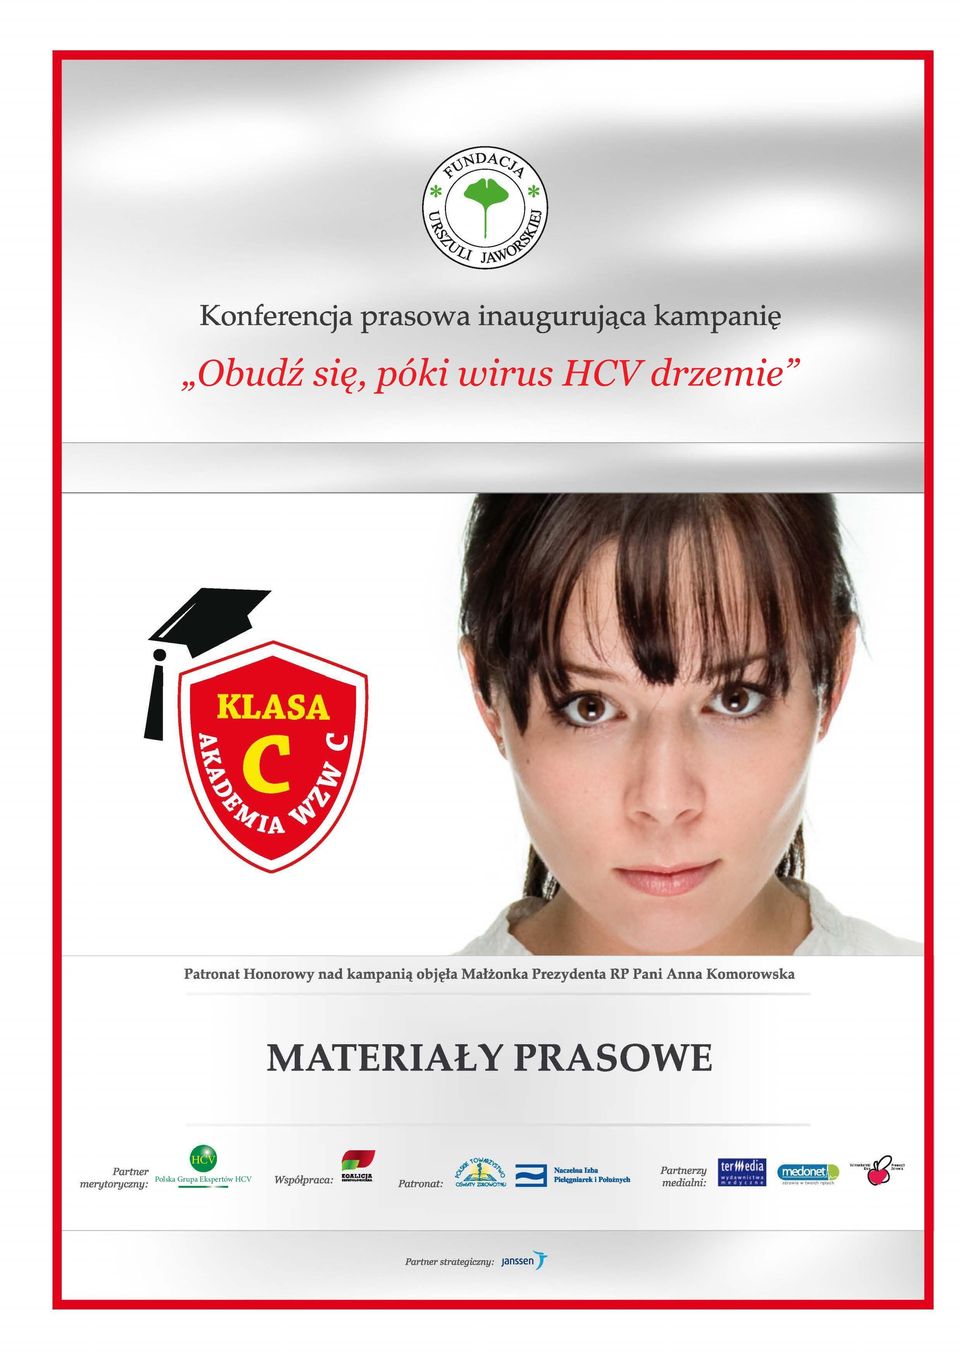 PRASOWE Partner merytoryczny: HCV Polska Grupa Ekspertów HCV,_ow.